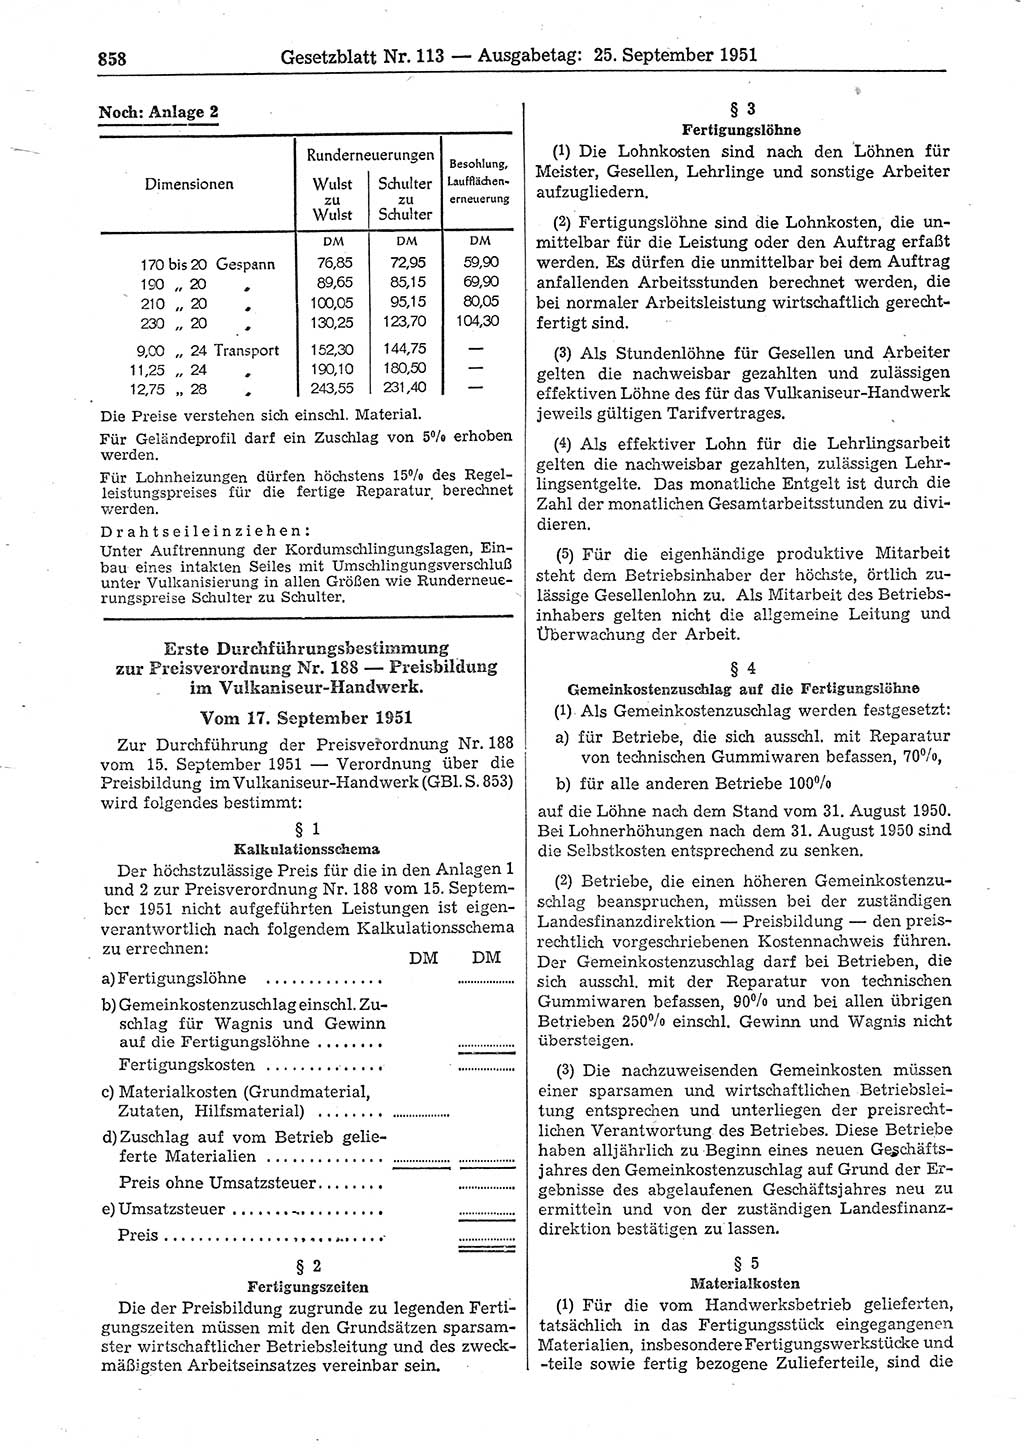 Gesetzblatt (GBl.) der Deutschen Demokratischen Republik (DDR) 1951, Seite 858 (GBl. DDR 1951, S. 858)